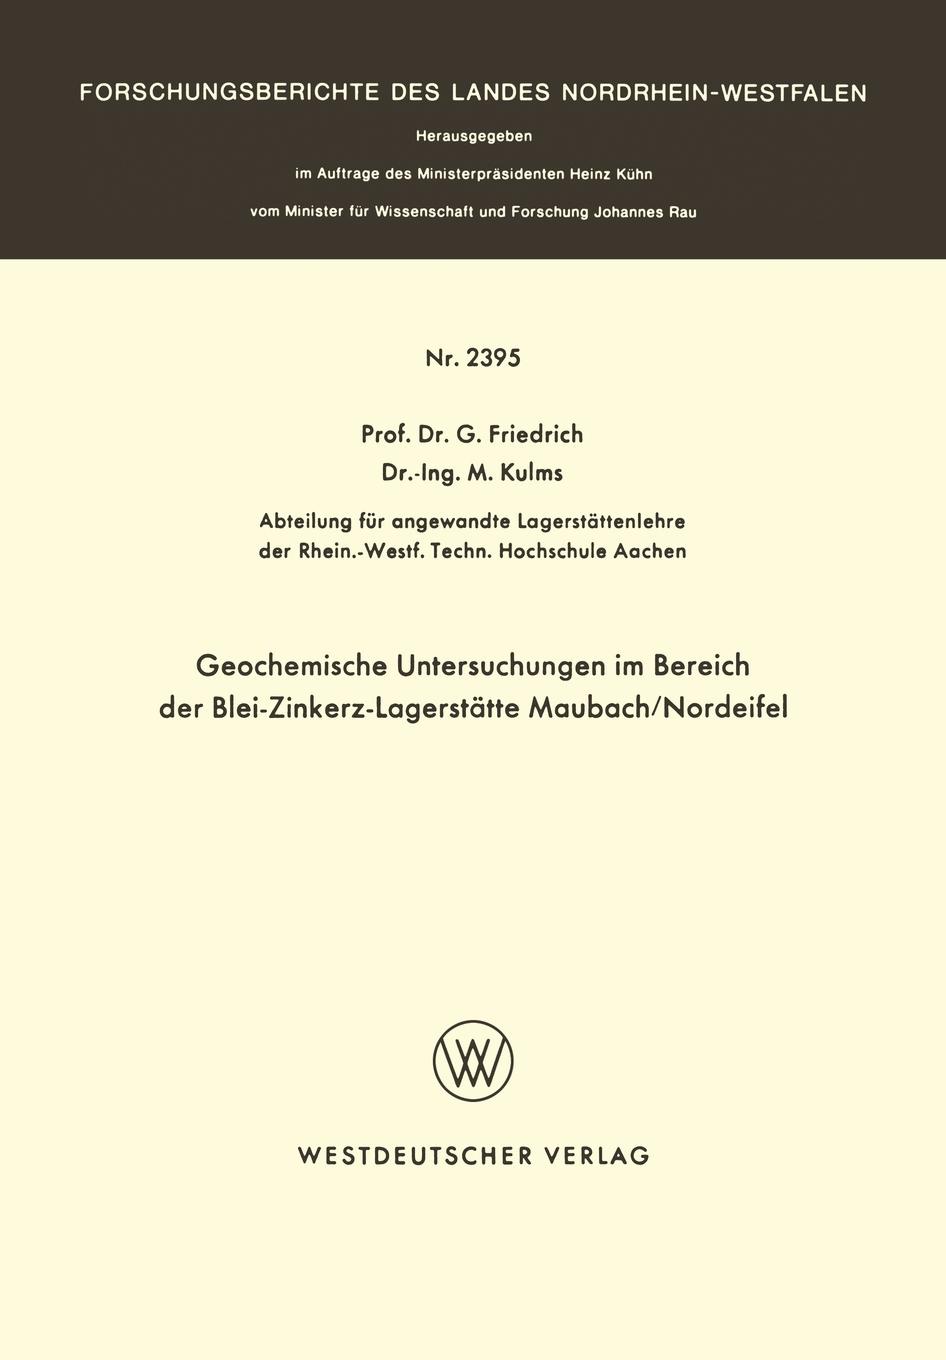 Geochemische Untersuchungen im Bereich der Blei-Zinkerz-Lagerstatte Maubach / Nordeifel